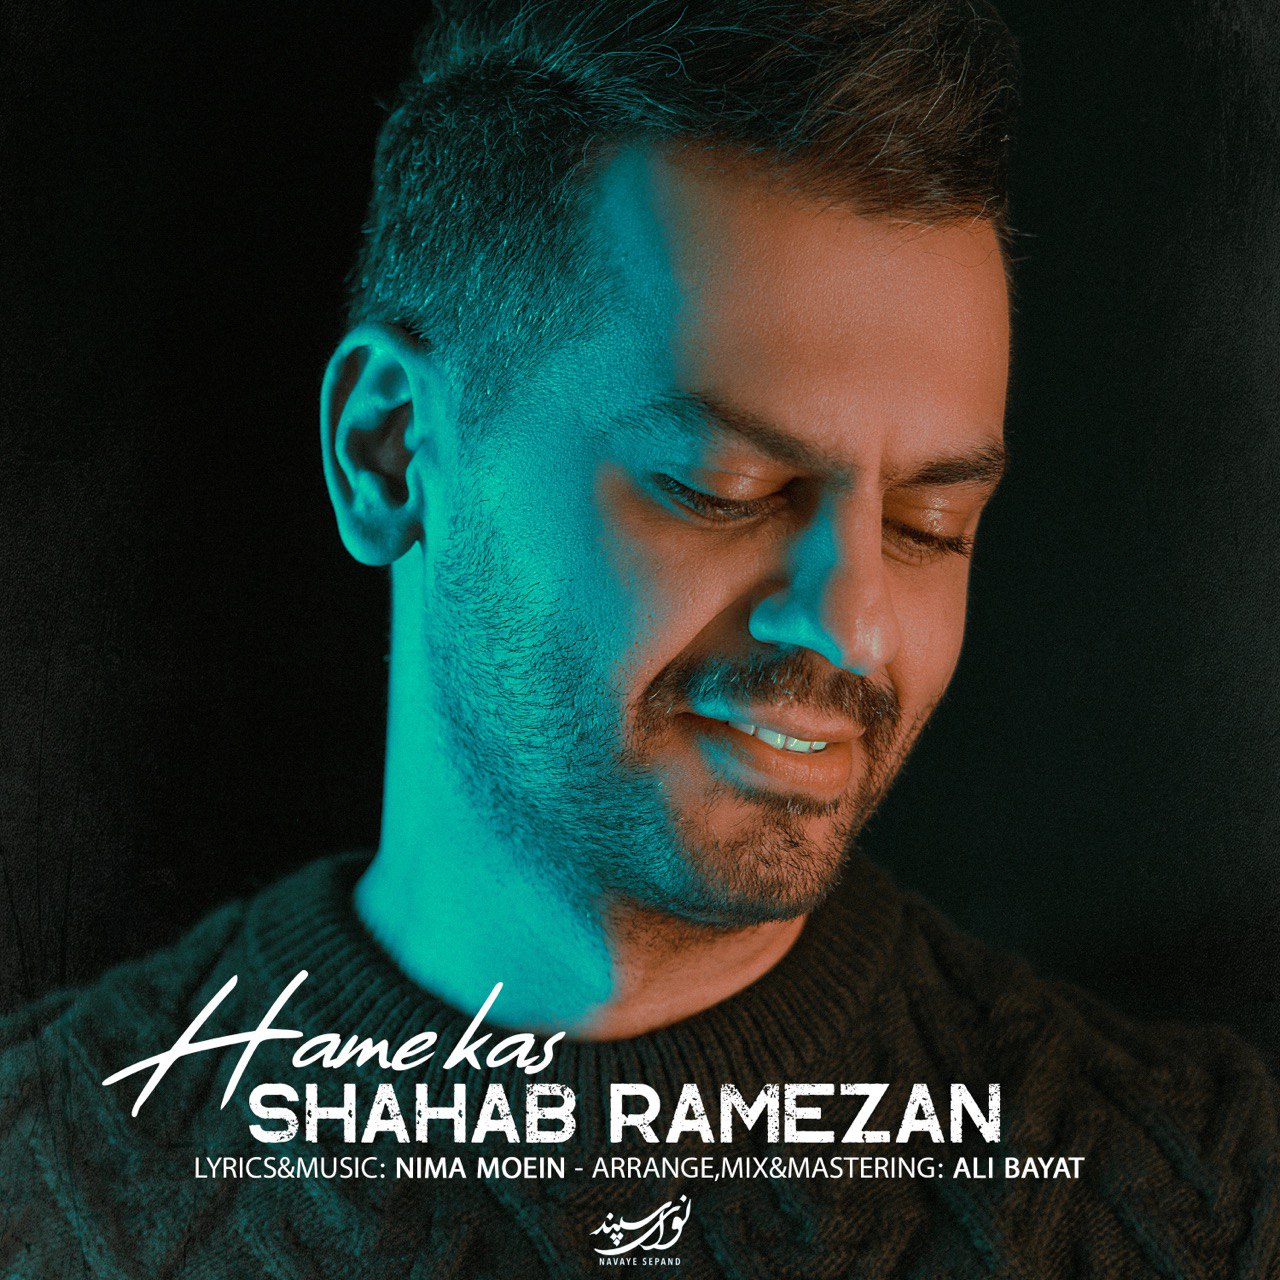 Shahab Ramezan - Hamekas - دانلود آهنگ شهاب رمضان به نام همه کس 